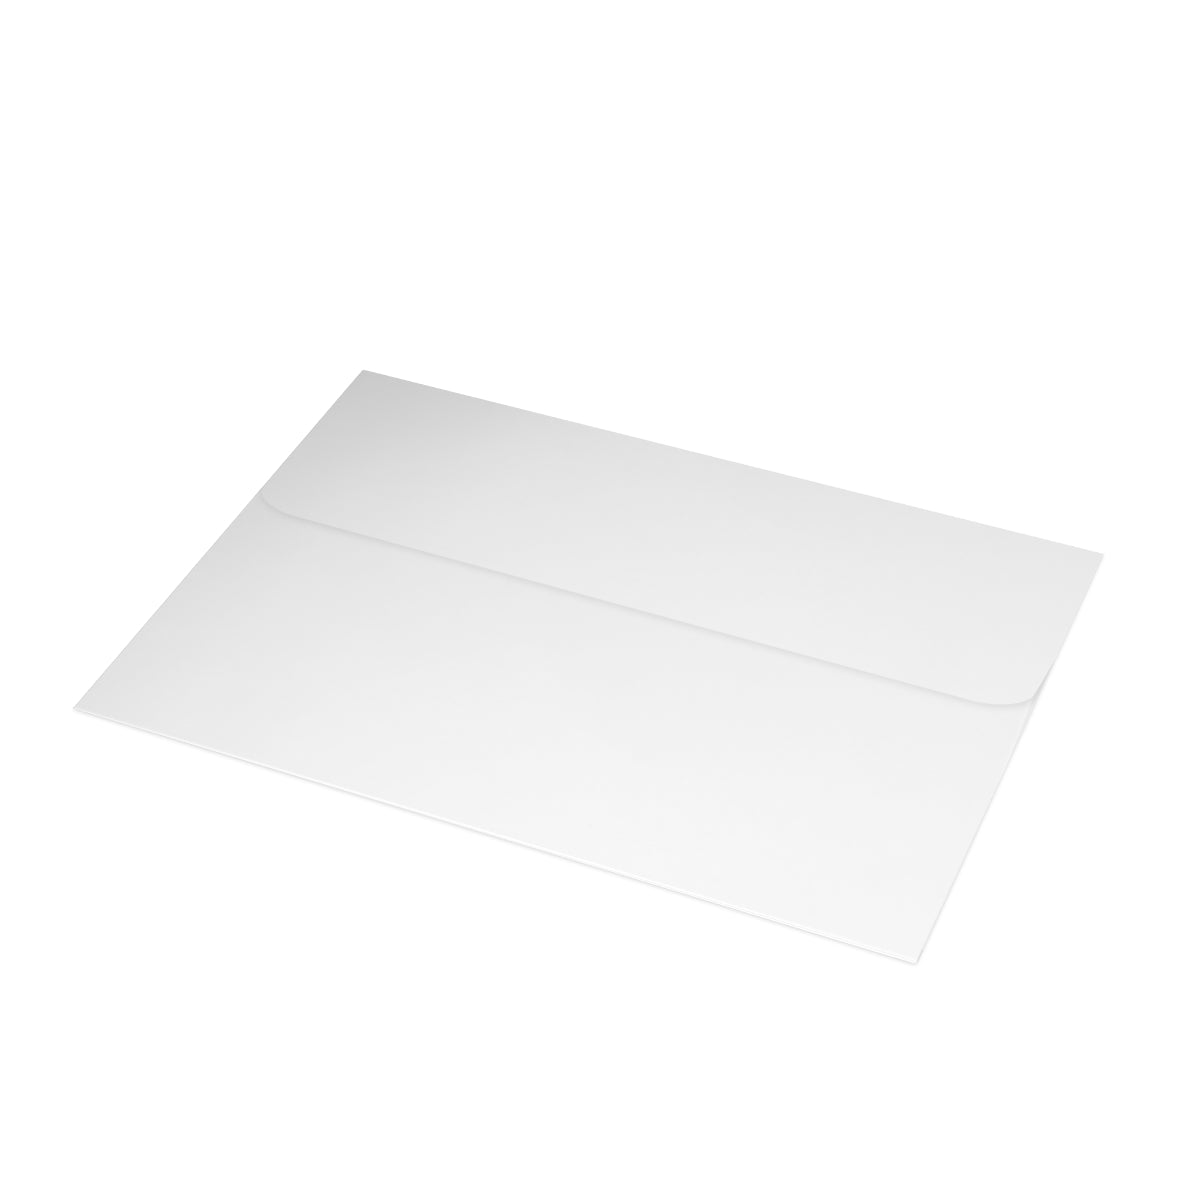 Cartes de notes mates pliées Seattle + enveloppes (10 pièces) 